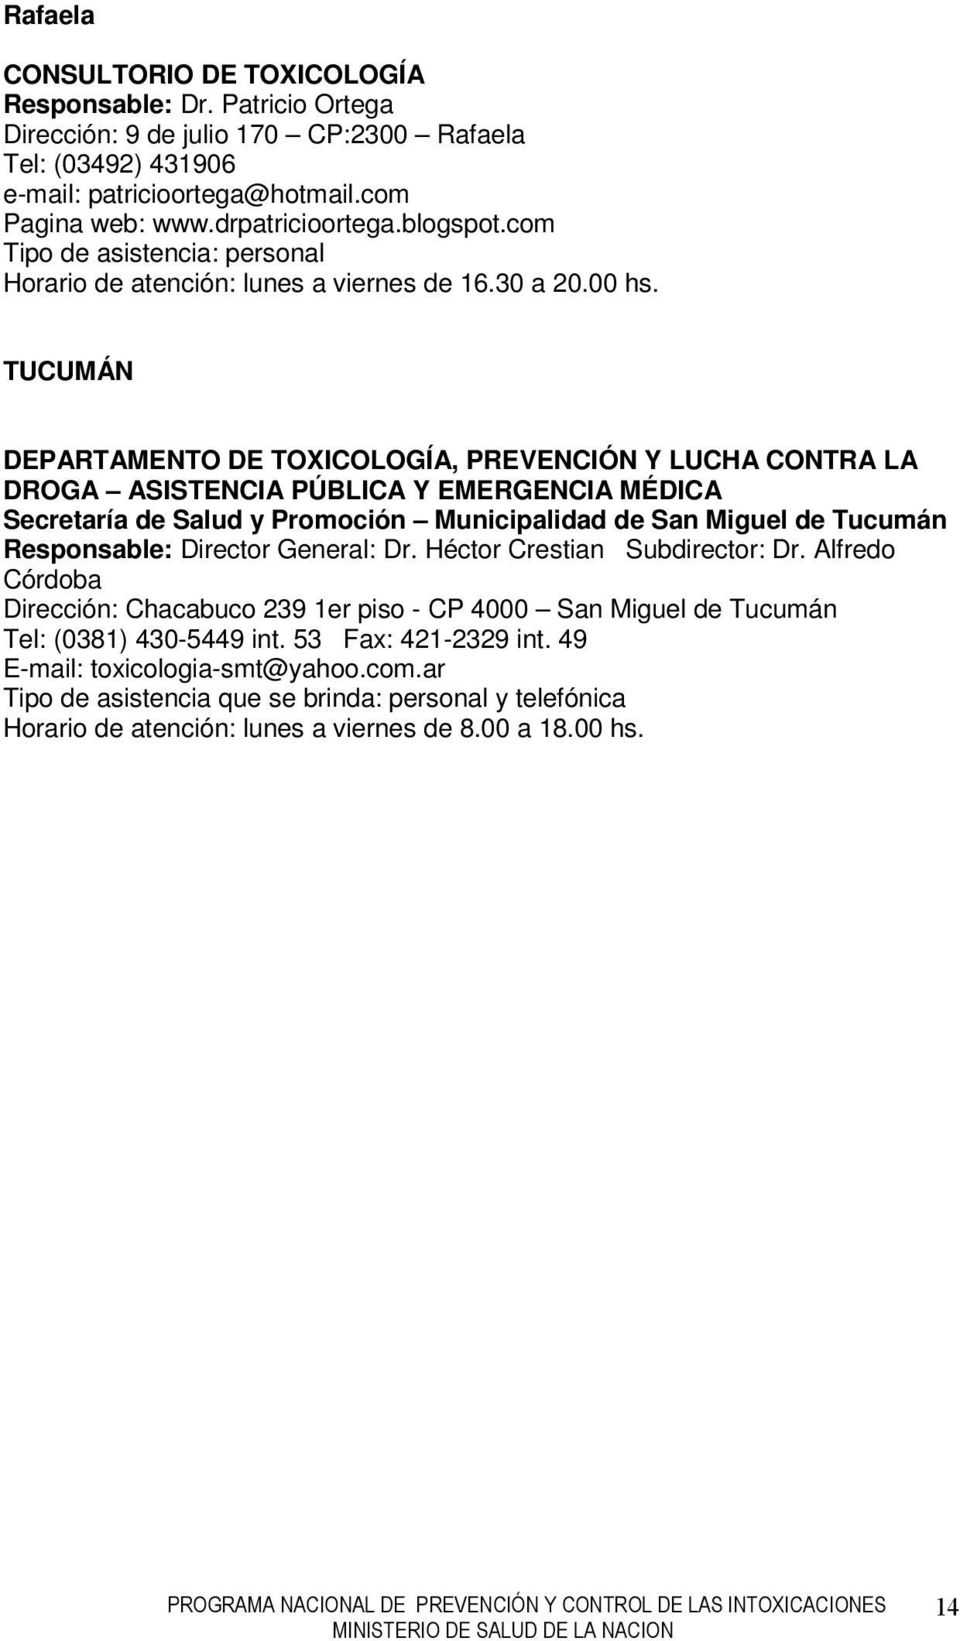 TUCUMÁN DEPARTAMENTO DE TOXICOLOGÍA, PREVENCIÓN Y LUCHA CONTRA LA DROGA ASISTENCIA PÚBLICA Y EMERGENCIA MÉDICA Secretaría de Salud y Promoción Municipalidad de San Miguel de Tucumán Responsable: